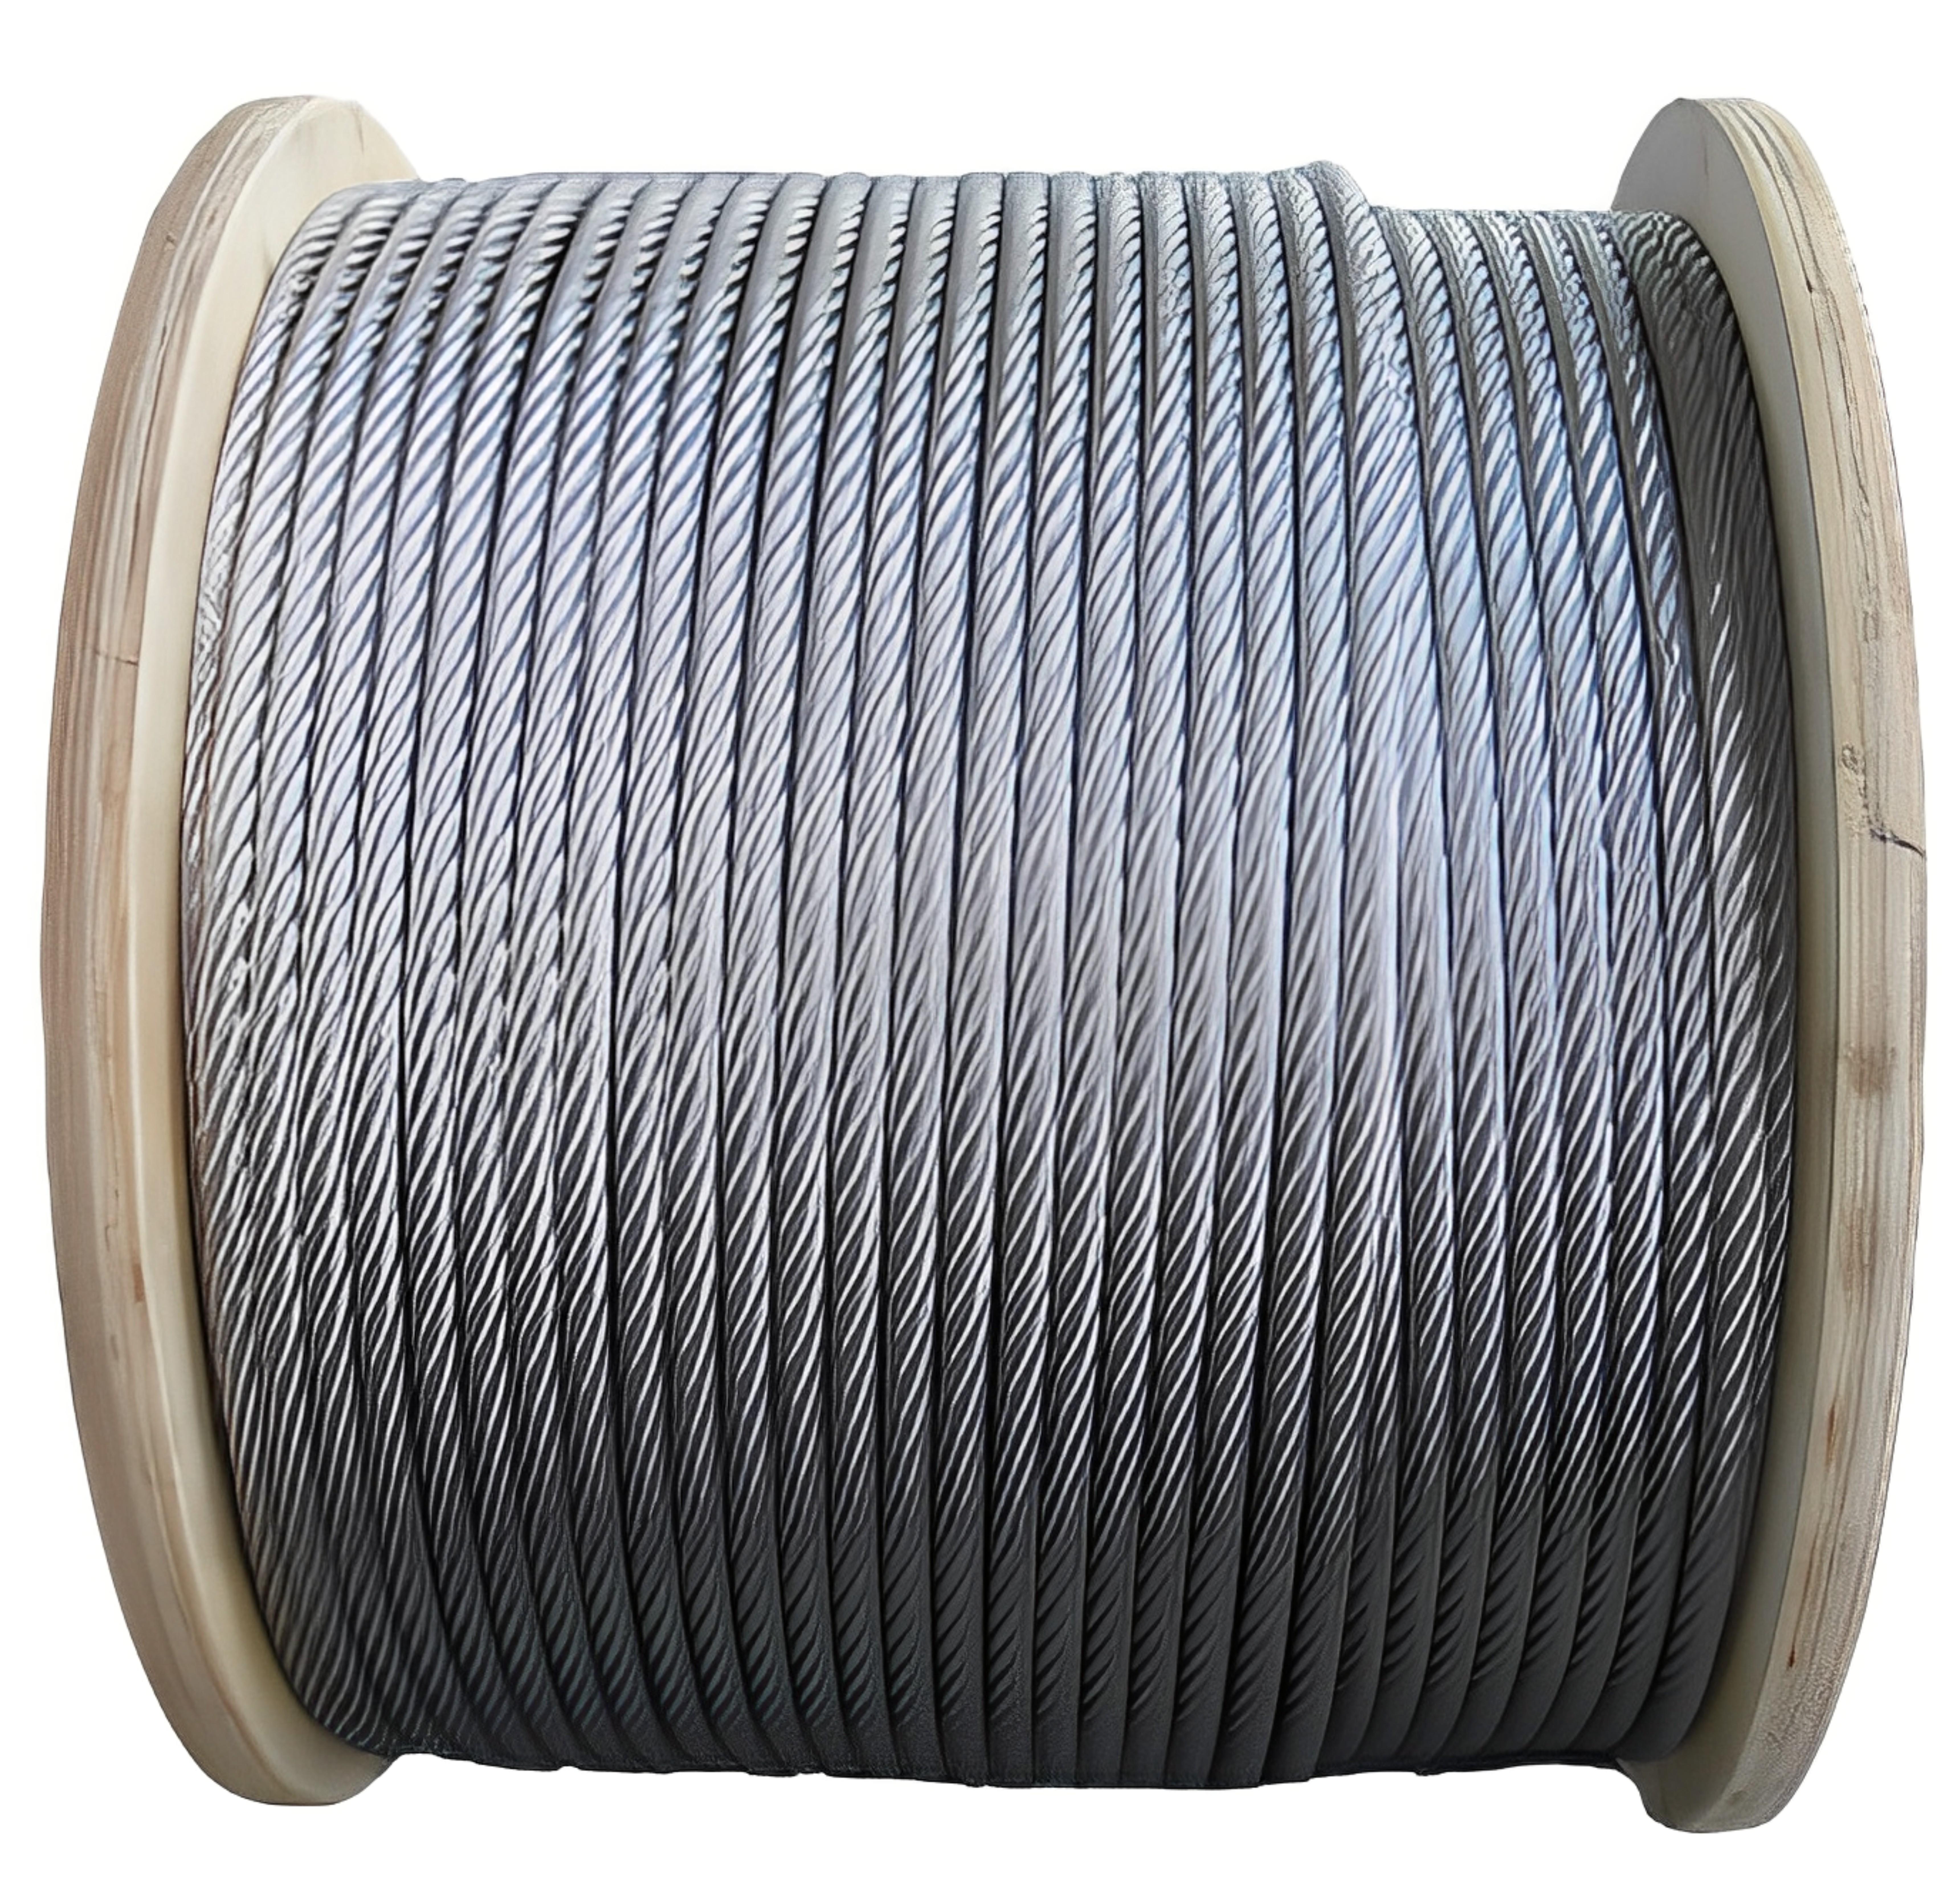 Buy 36 mm Steel Wire Rope 6 x 36 1960 N/mm2 100 - 200 m online at